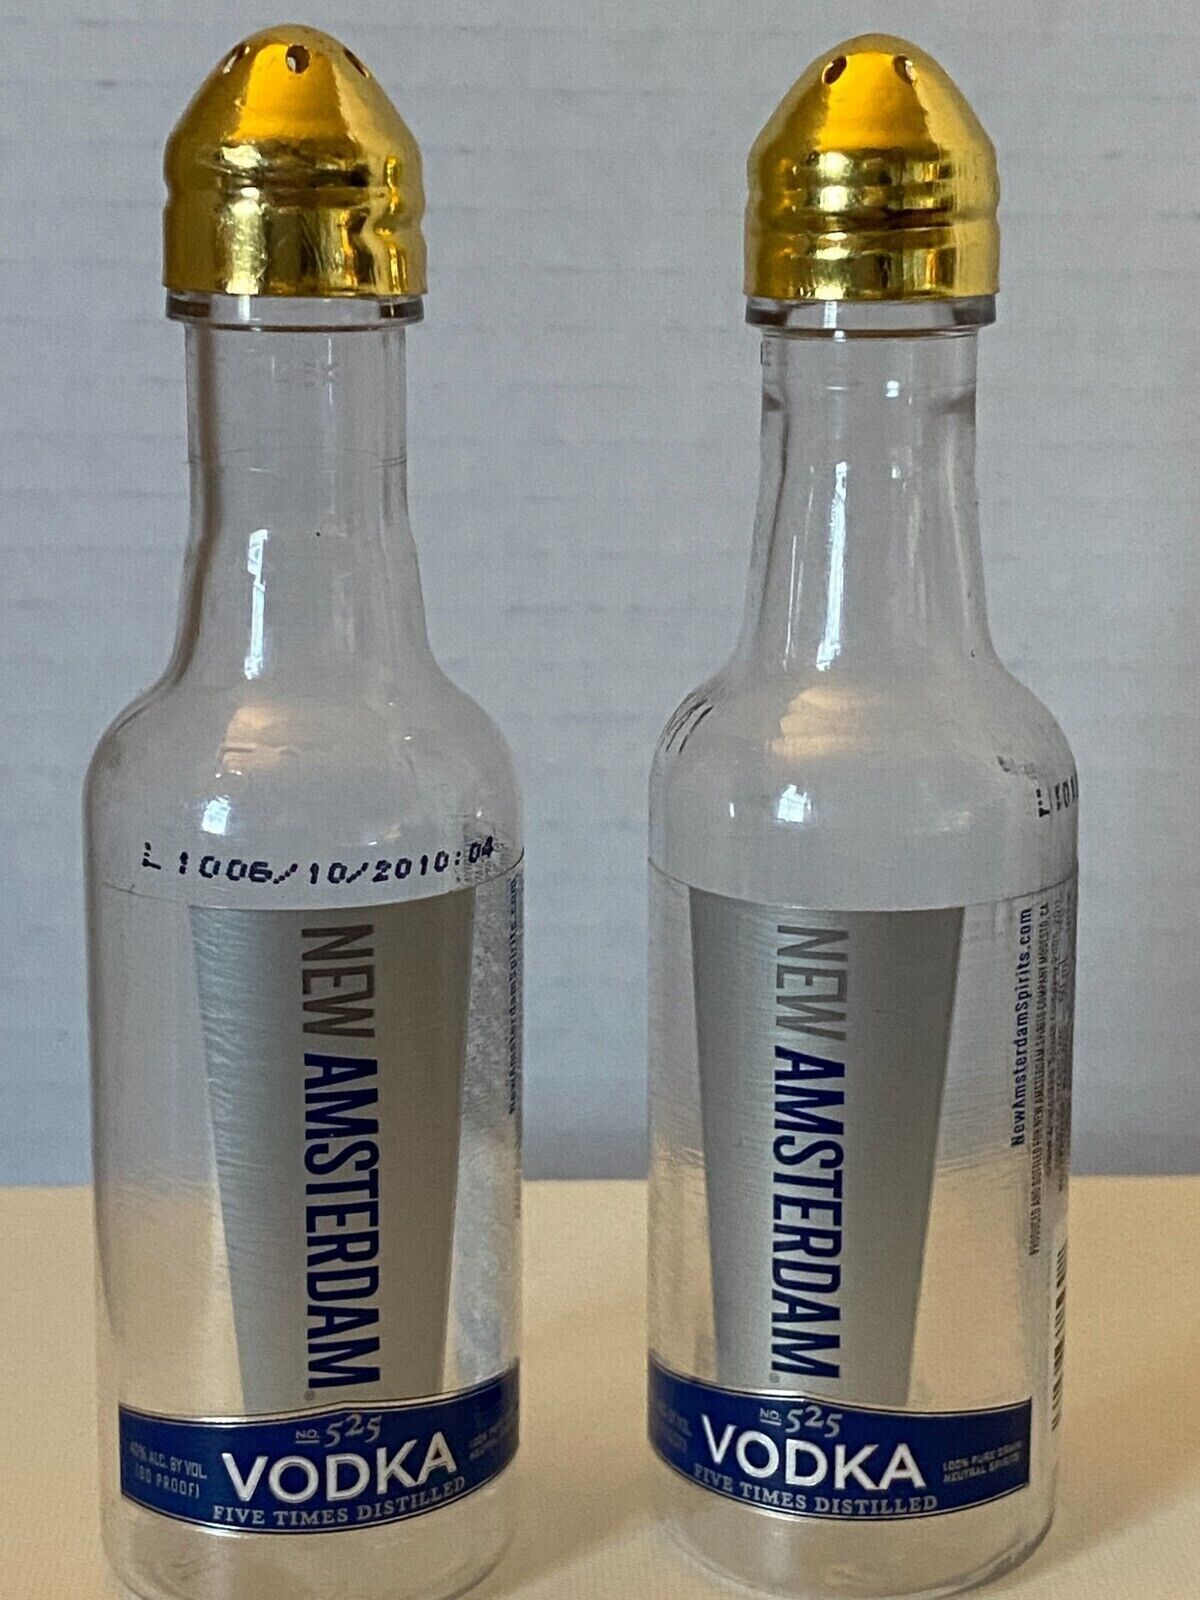 New Amsterdam Vodka 50 ml Plastic Bottles * Salt & Pepper Shaker Set 4.25\